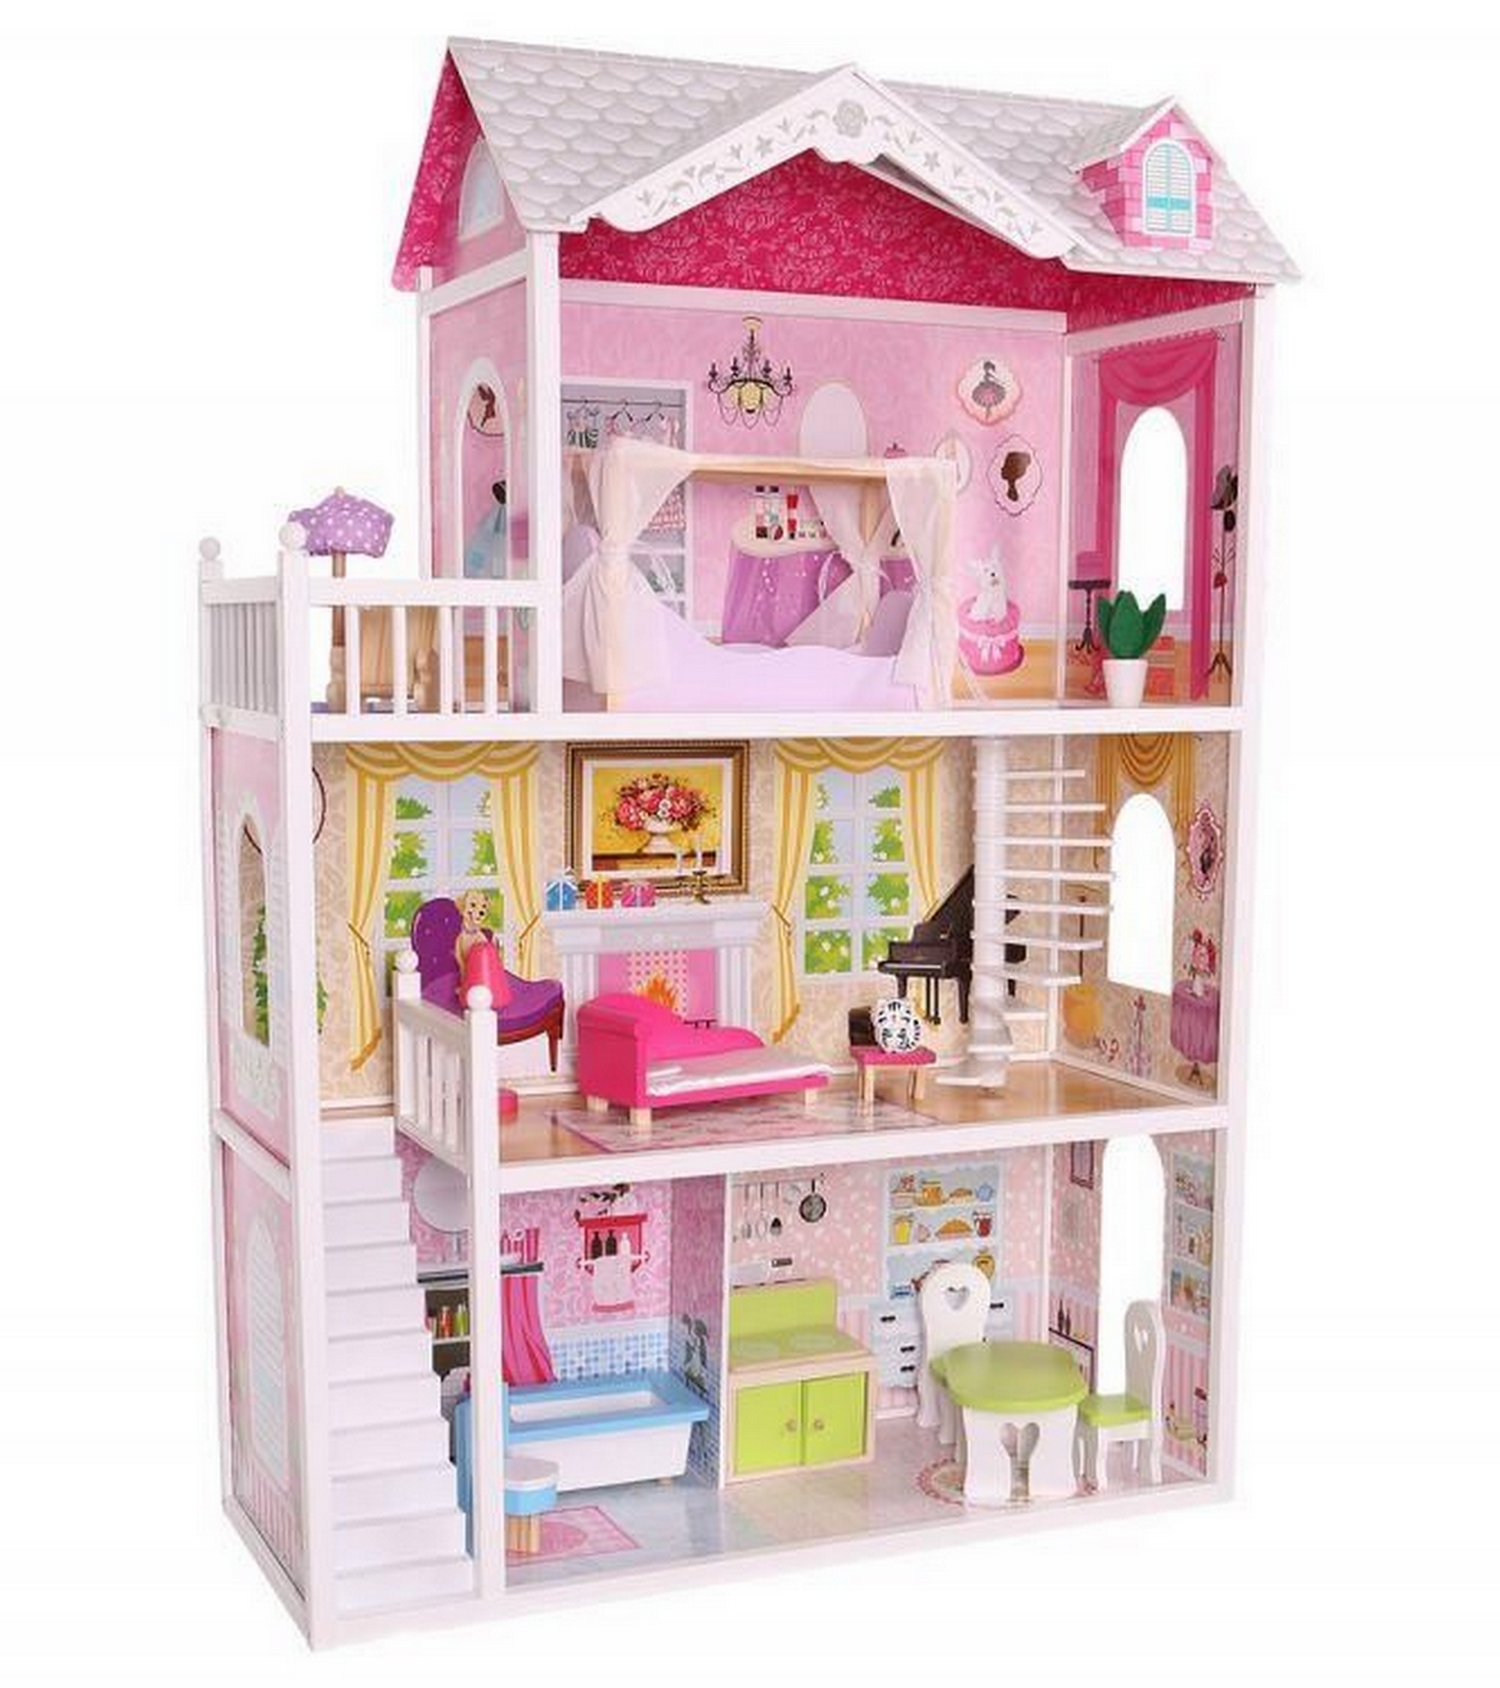 Кукольные игрушки купить. Кукольный дом ECOTOYS Vila. Dream House кукольный домик 55.2 см 20.8см46.5 89pcs. Домик для девочки. Игрушки кукольный домик для Барби.